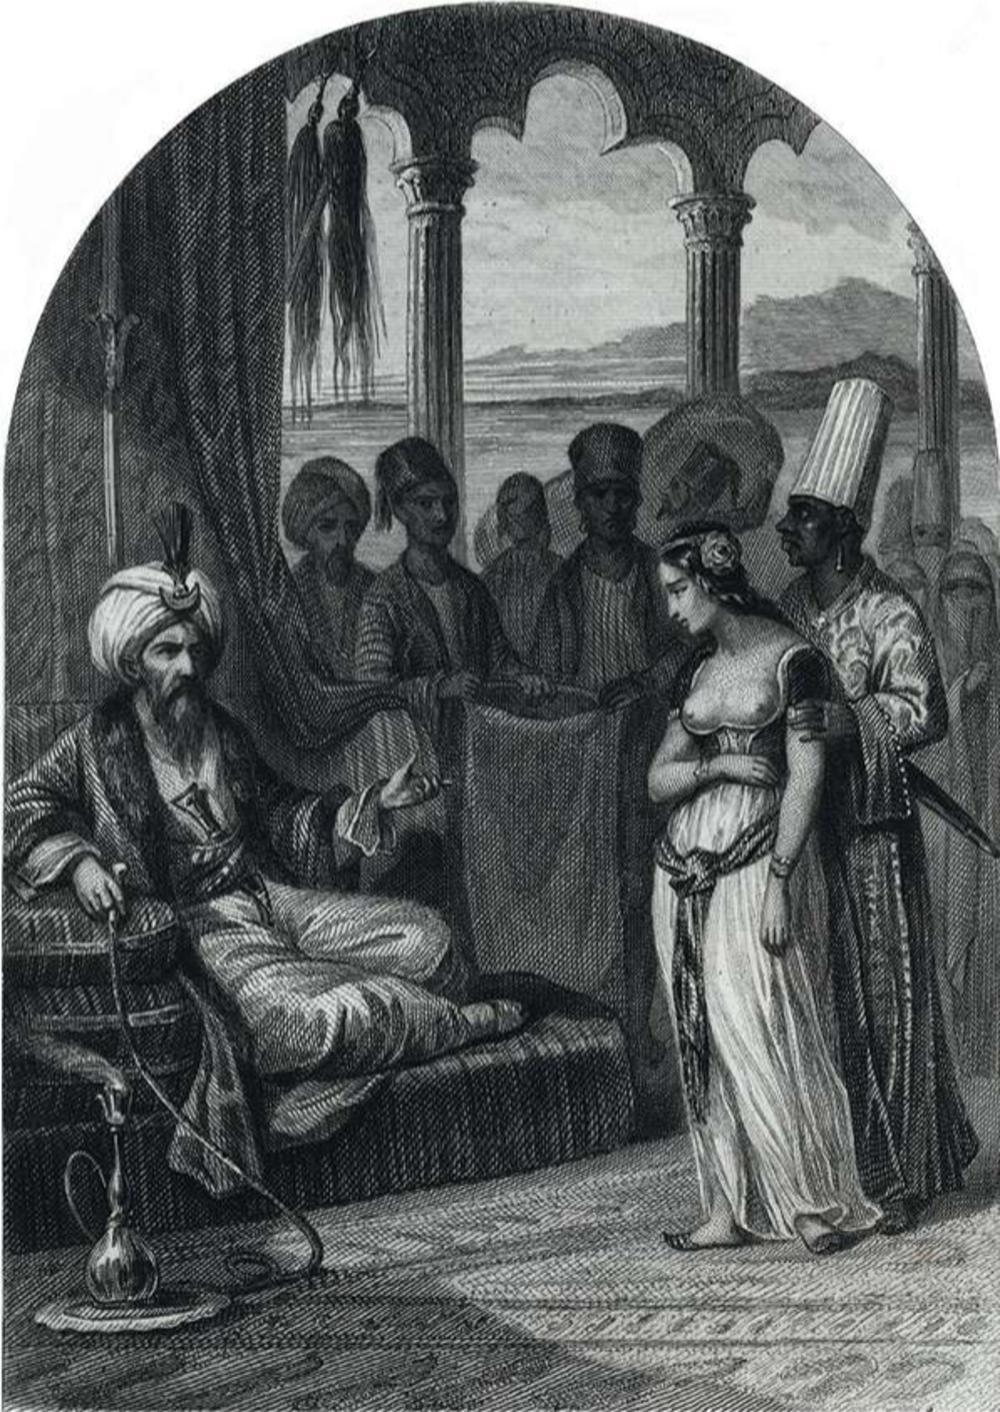 Sultan Mehmet III (1566-1603), Ottomaanse heerser, laat een van de vrouwen van zijn harem executeren is de titel van deze gravure uit het boek Les prisons de l'Europe van d'Alboize en Maquet uit 1845. Het sprookje van de slechte sultan is dan al wijd verspreid.